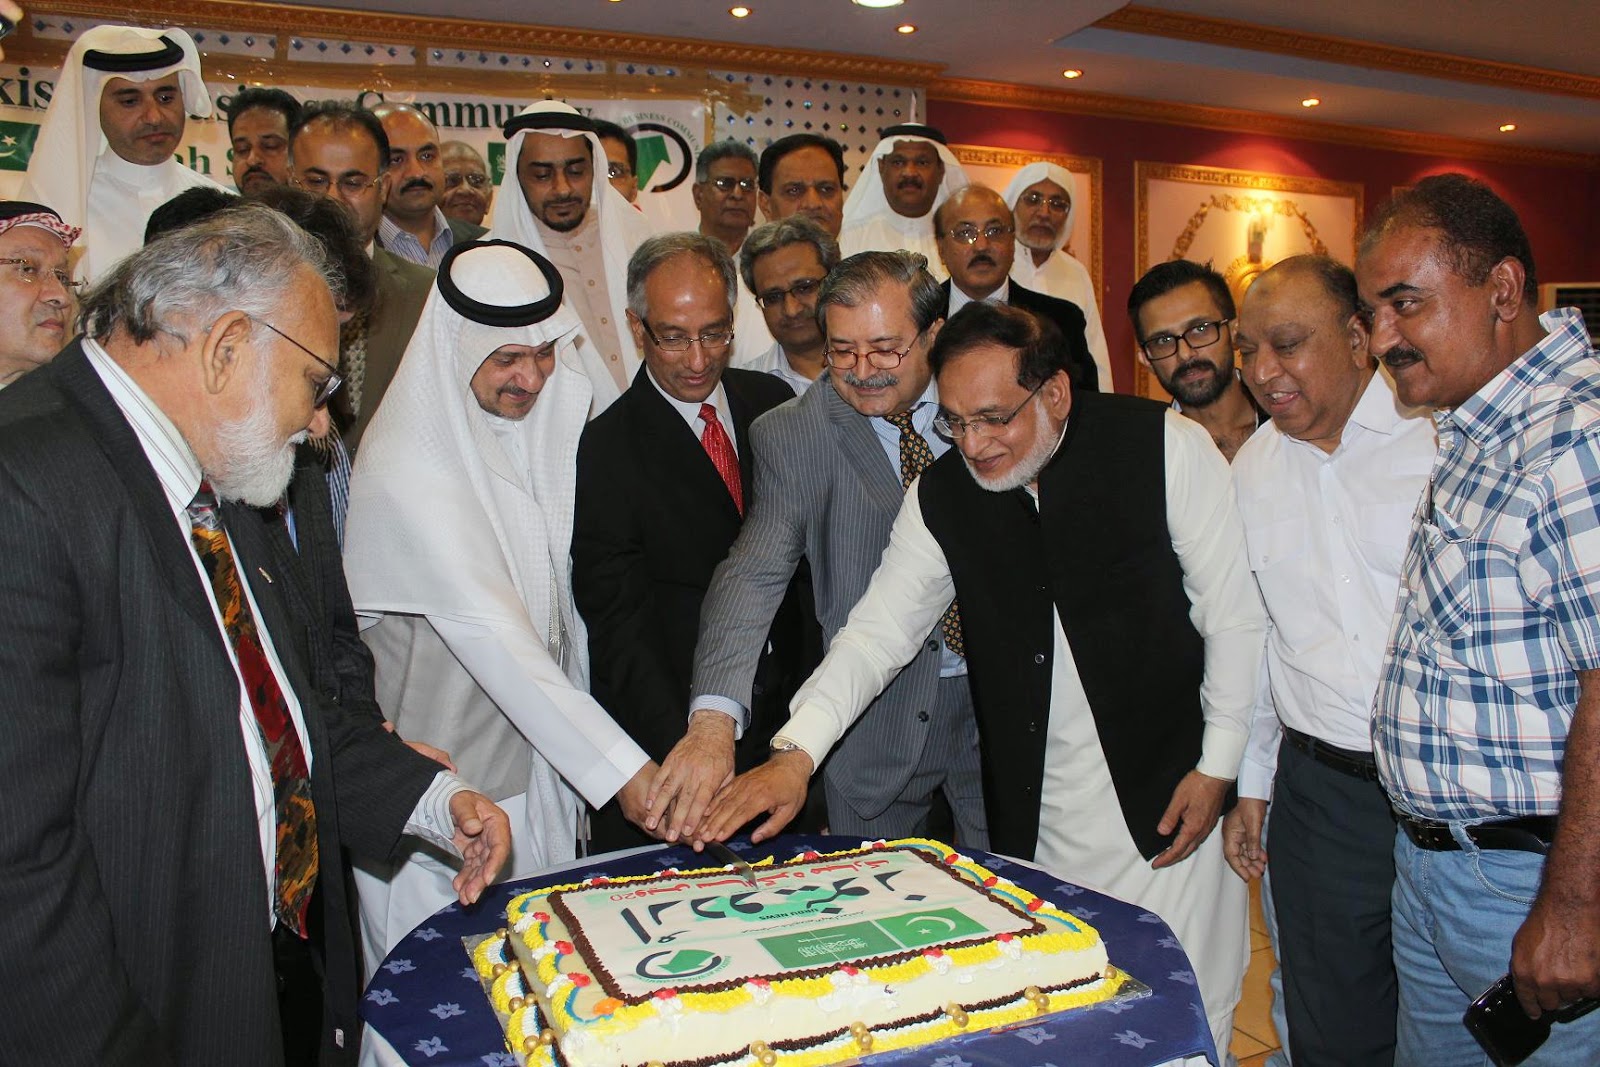 Twentieth Anniversary of “Daily Urdu News” Celebrated by Pakistani business community, jeddah.JPG